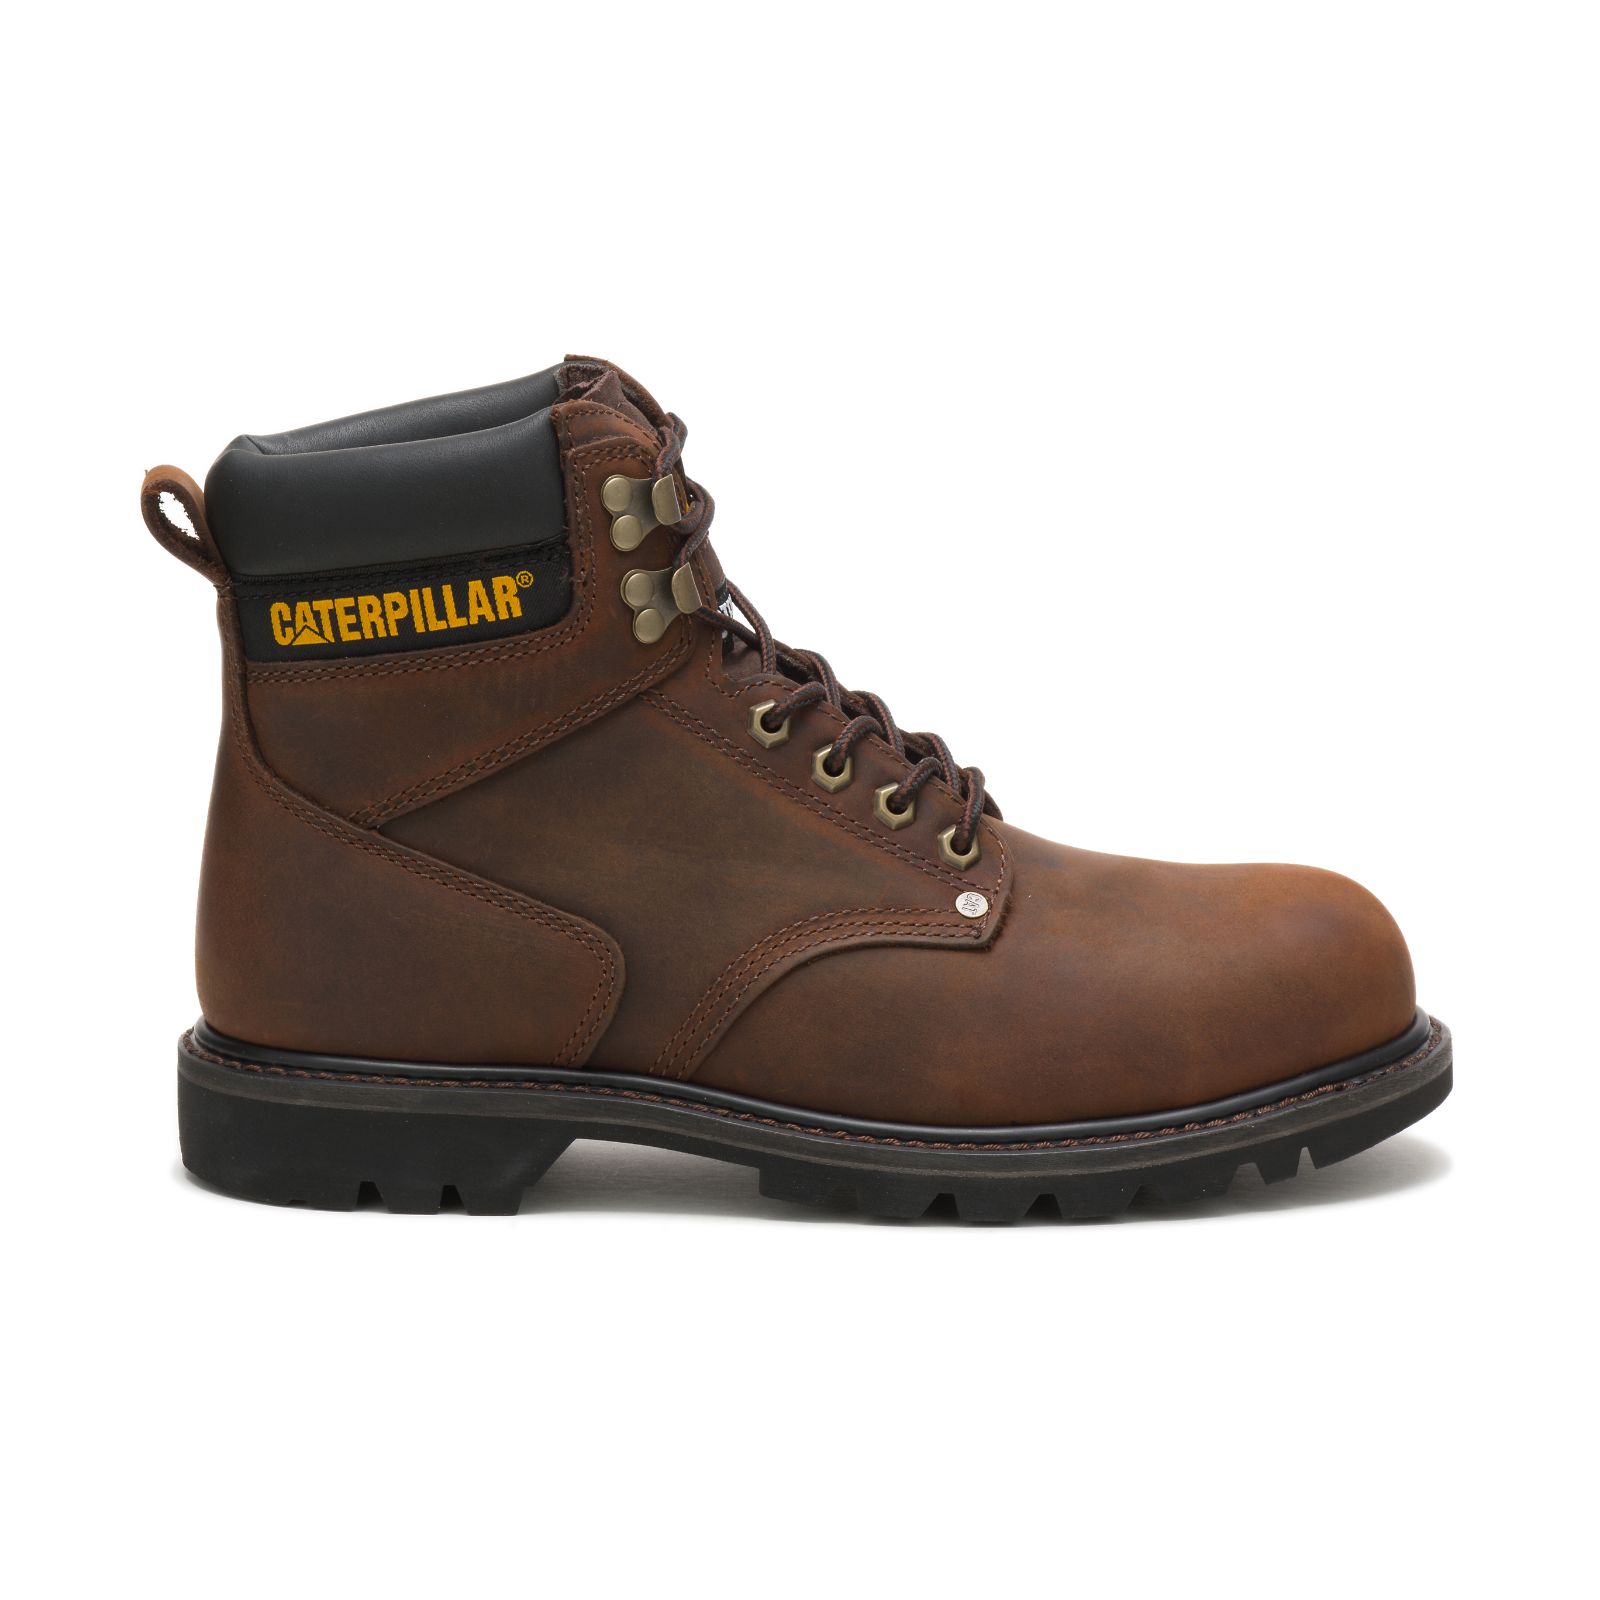 Caterpillar Second Shift Steel Toe - Mens Steel Toe Boots - Dark Brown - NZ (982MQDAUJ)